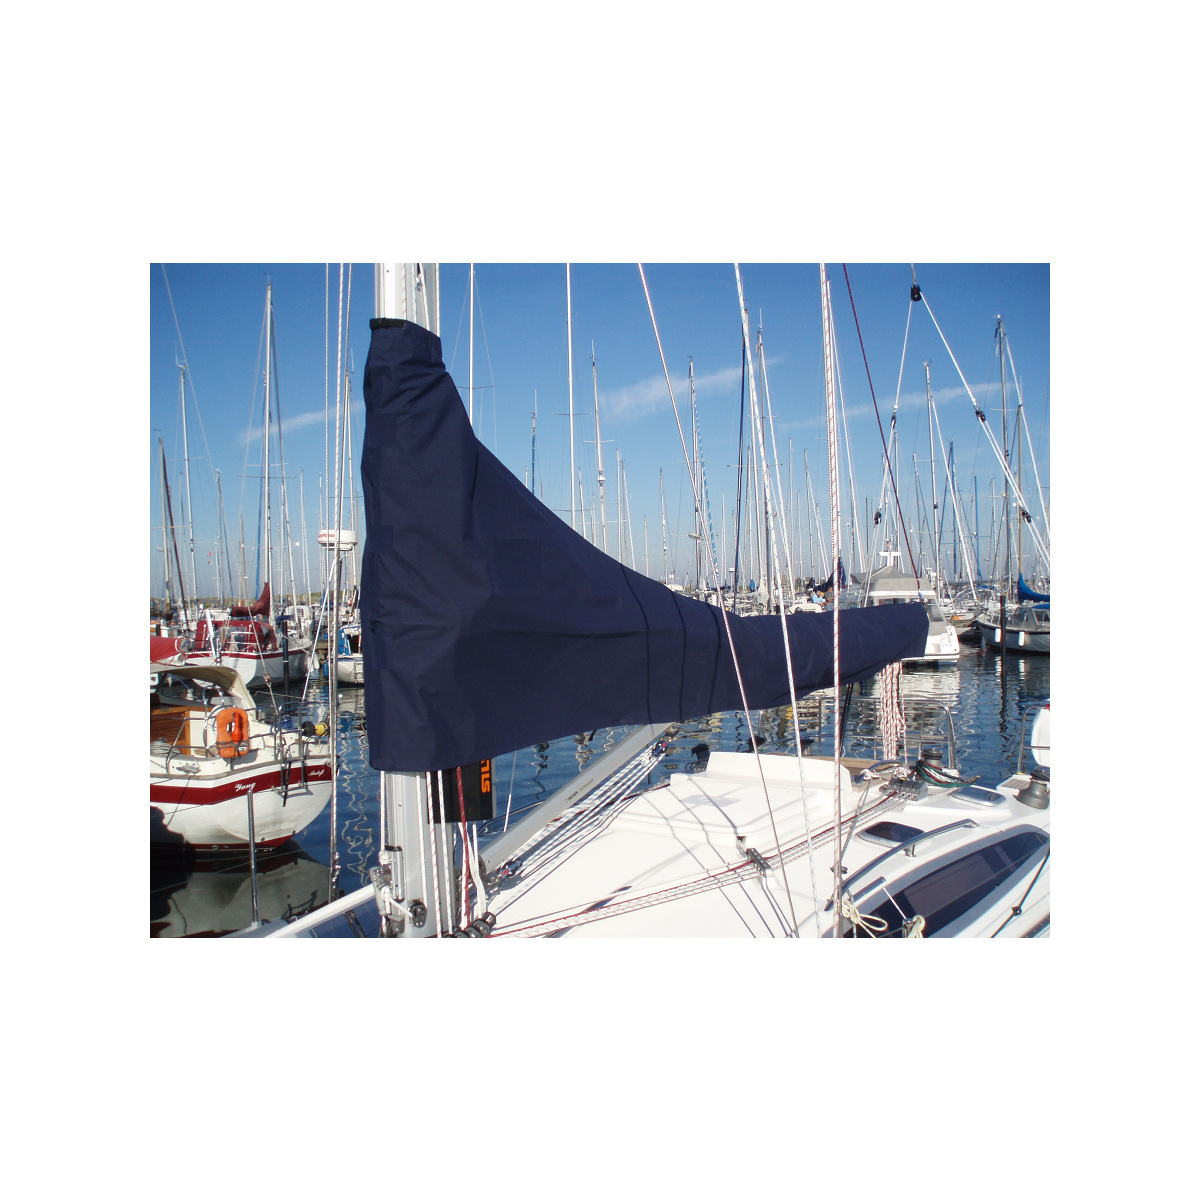 12zeemijlen zeilhuik donkerblauw - lengte 4,75m